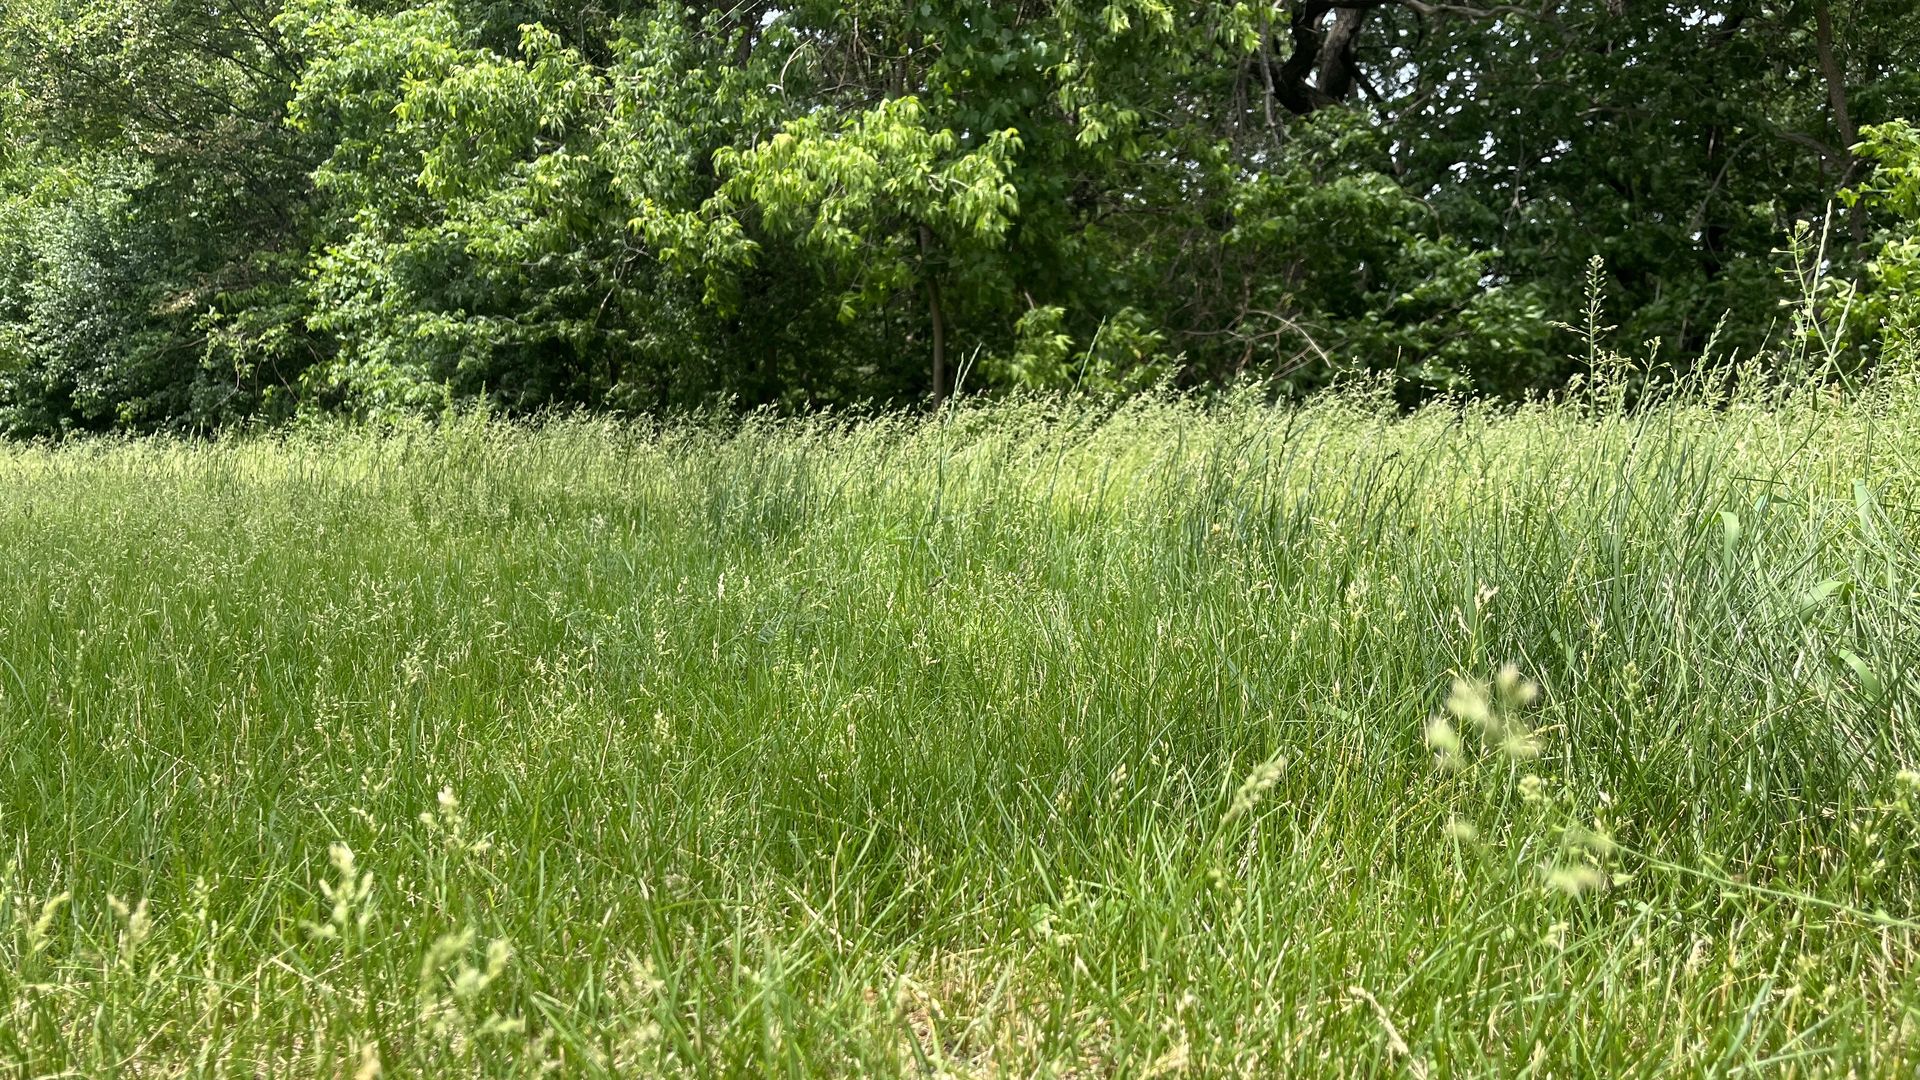 Tall grass in a Minneapolis park 